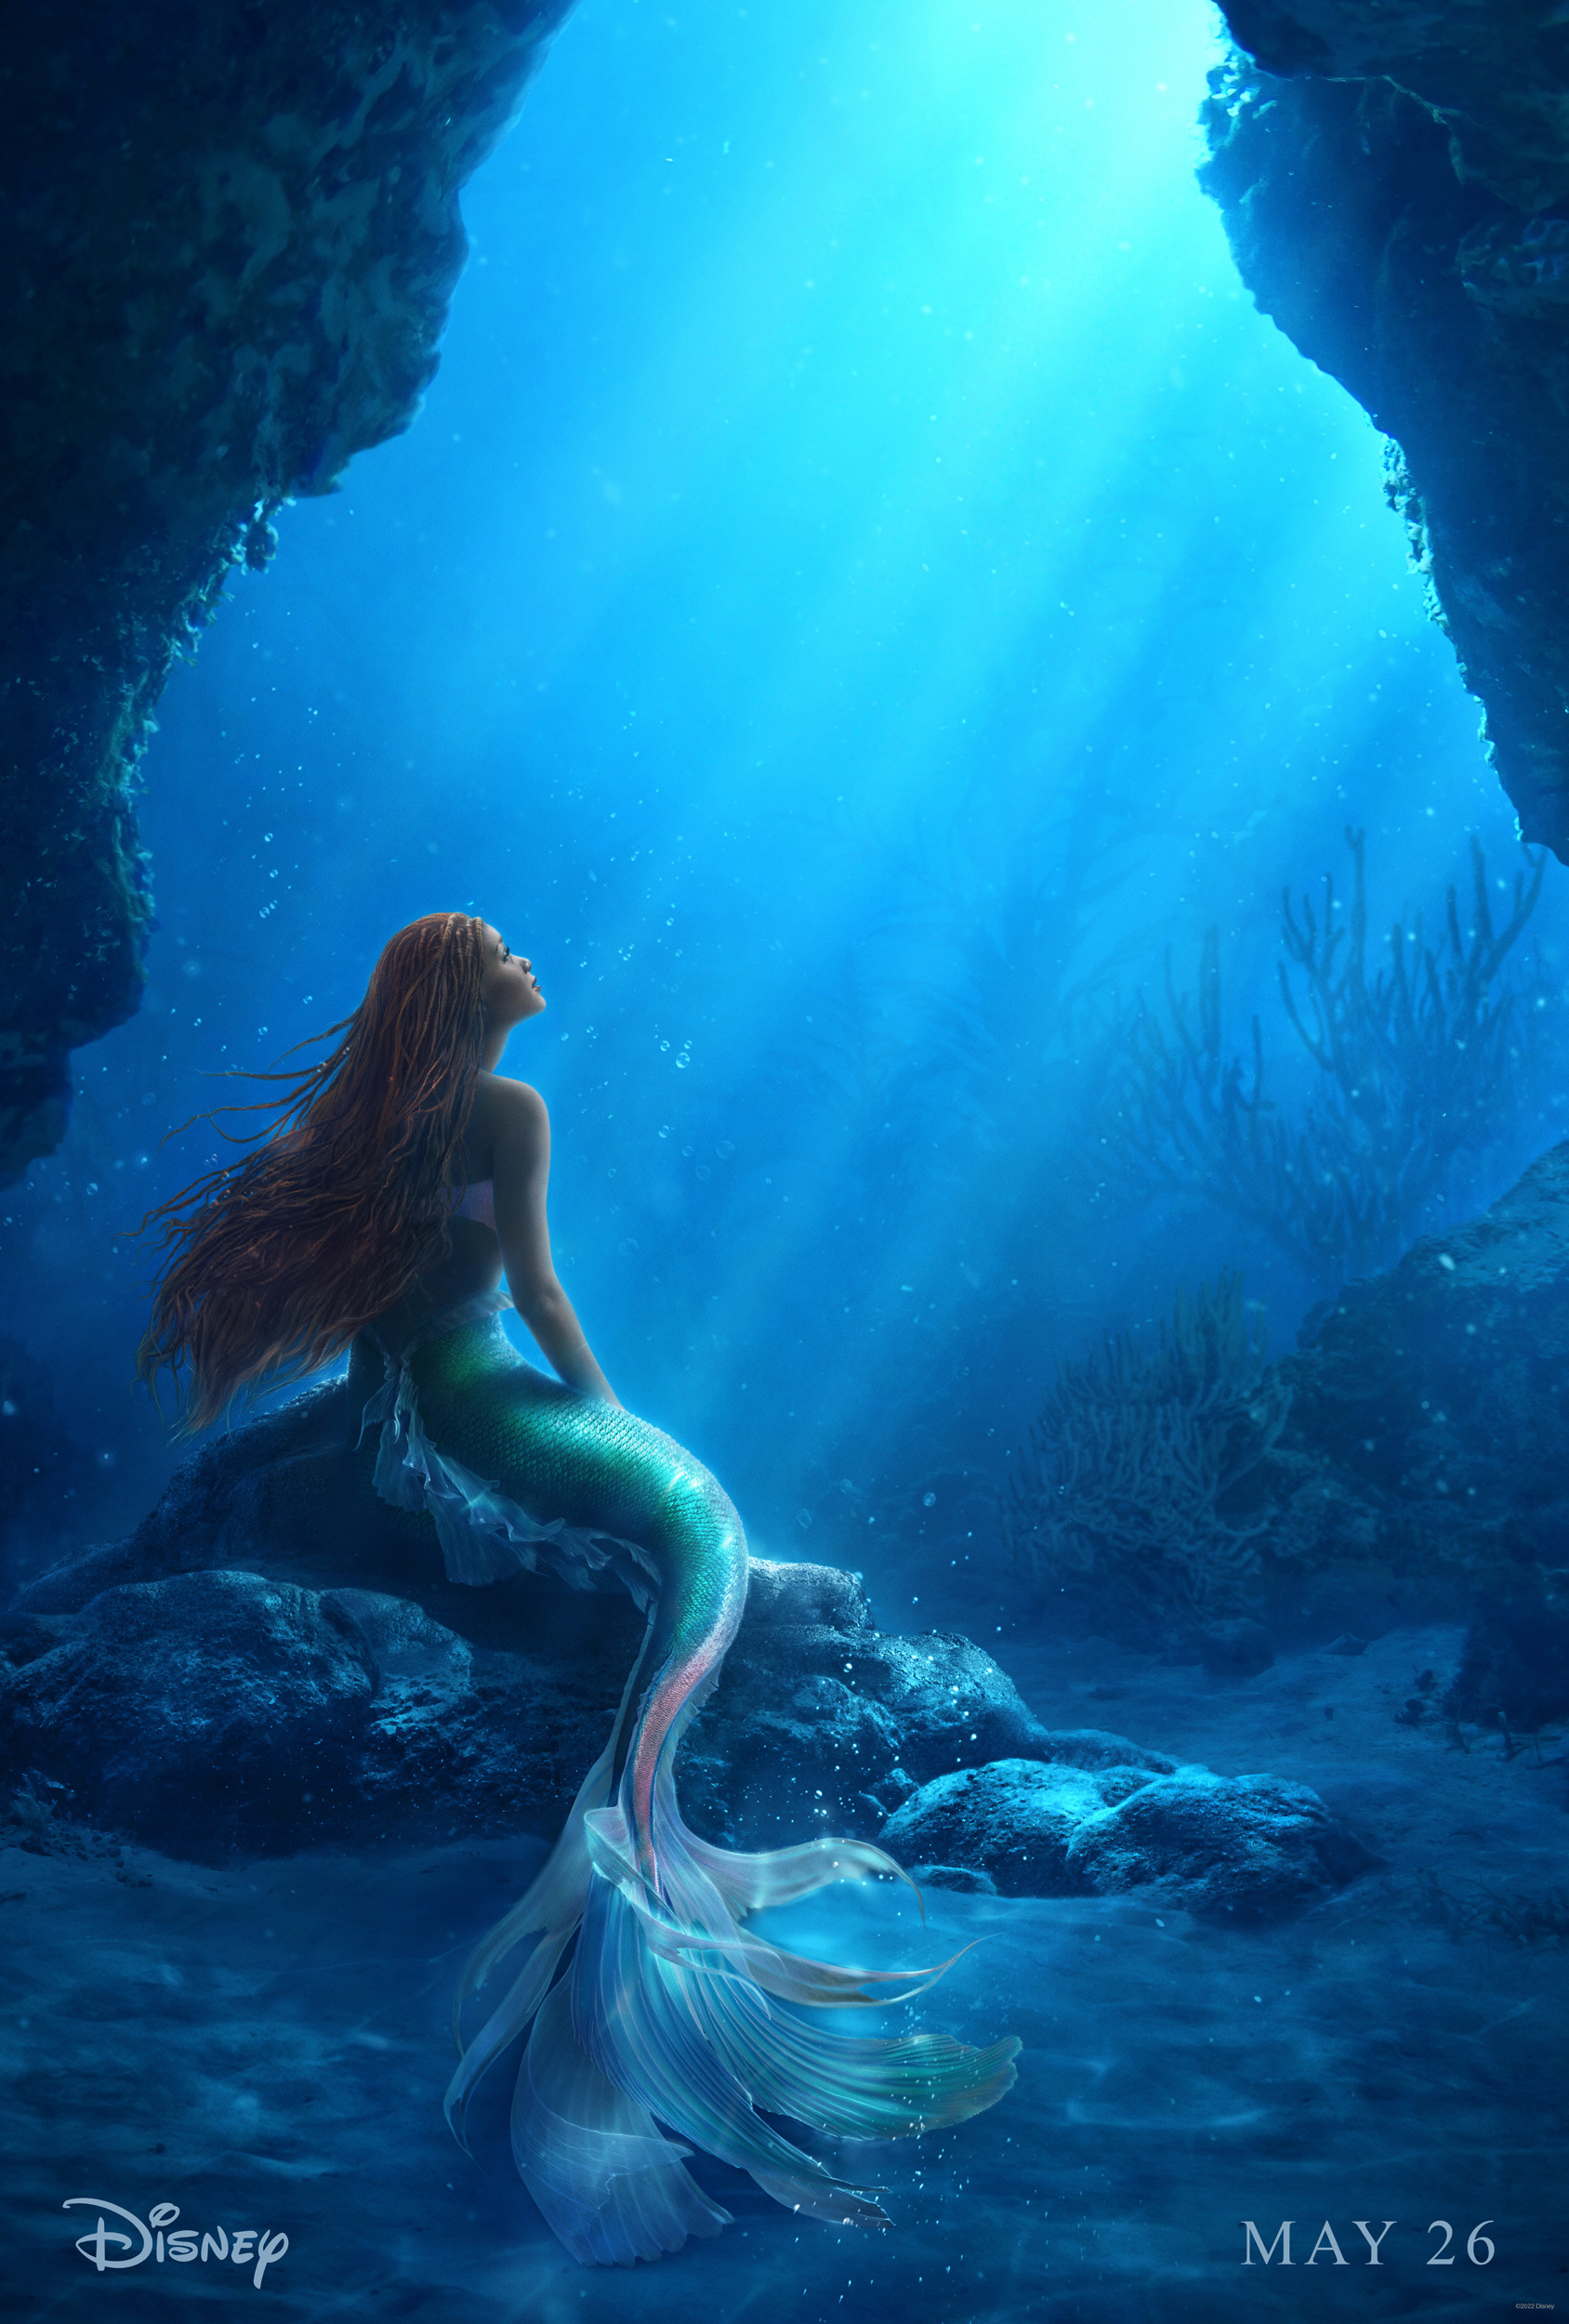 La sirenetta - The little mermaid - poster